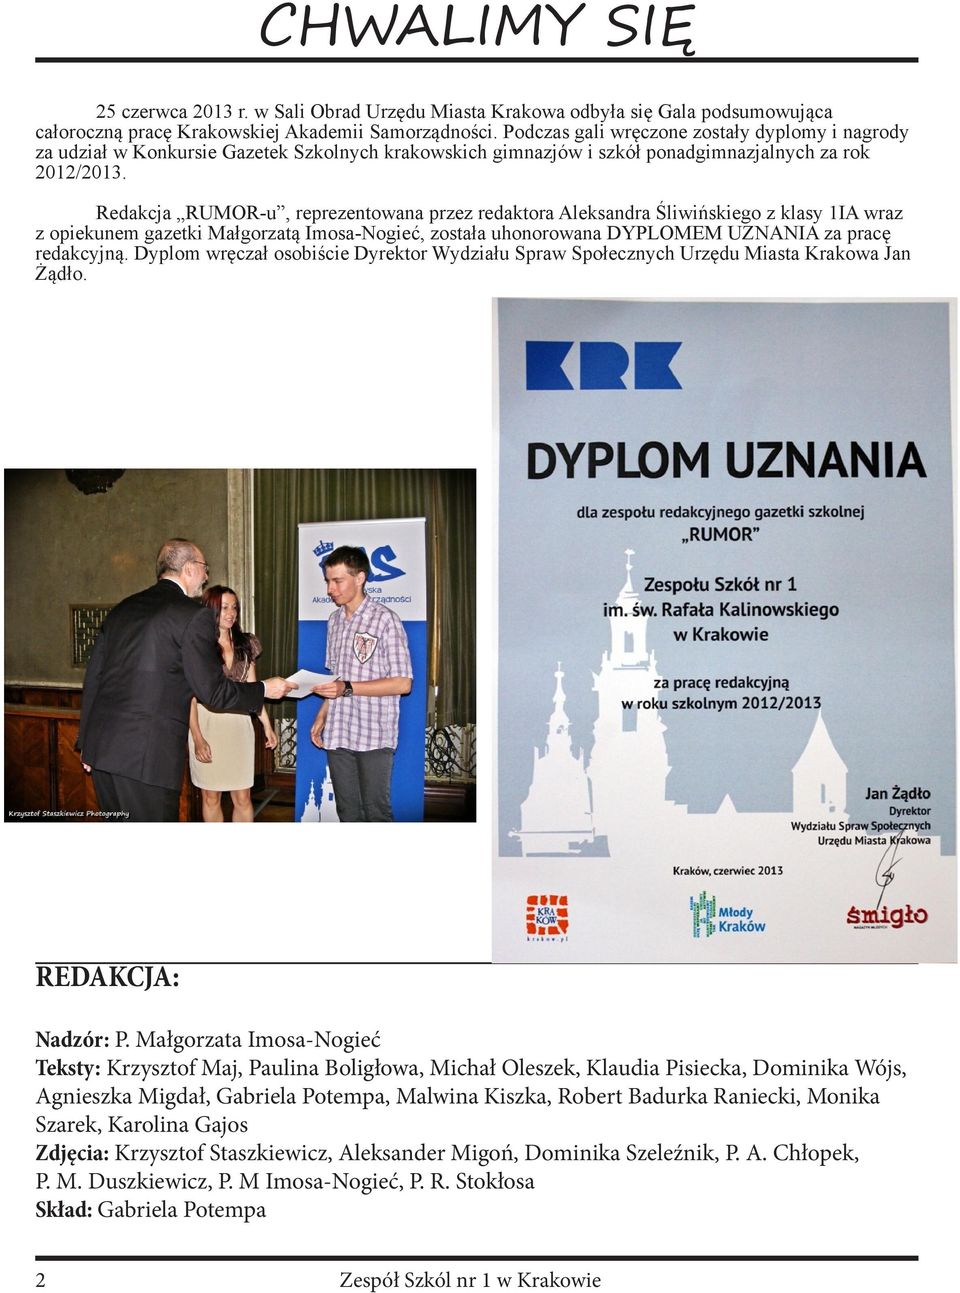 Redakcja RUMOR-u, reprezentowana przez redaktora Aleksandra Śliwińskiego z klasy 1IA wraz z opiekunem gazetki Małgorzatą Imosa-Nogieć, została uhonorowana DYPLOMEM UZNANIA za pracę redakcyjną.